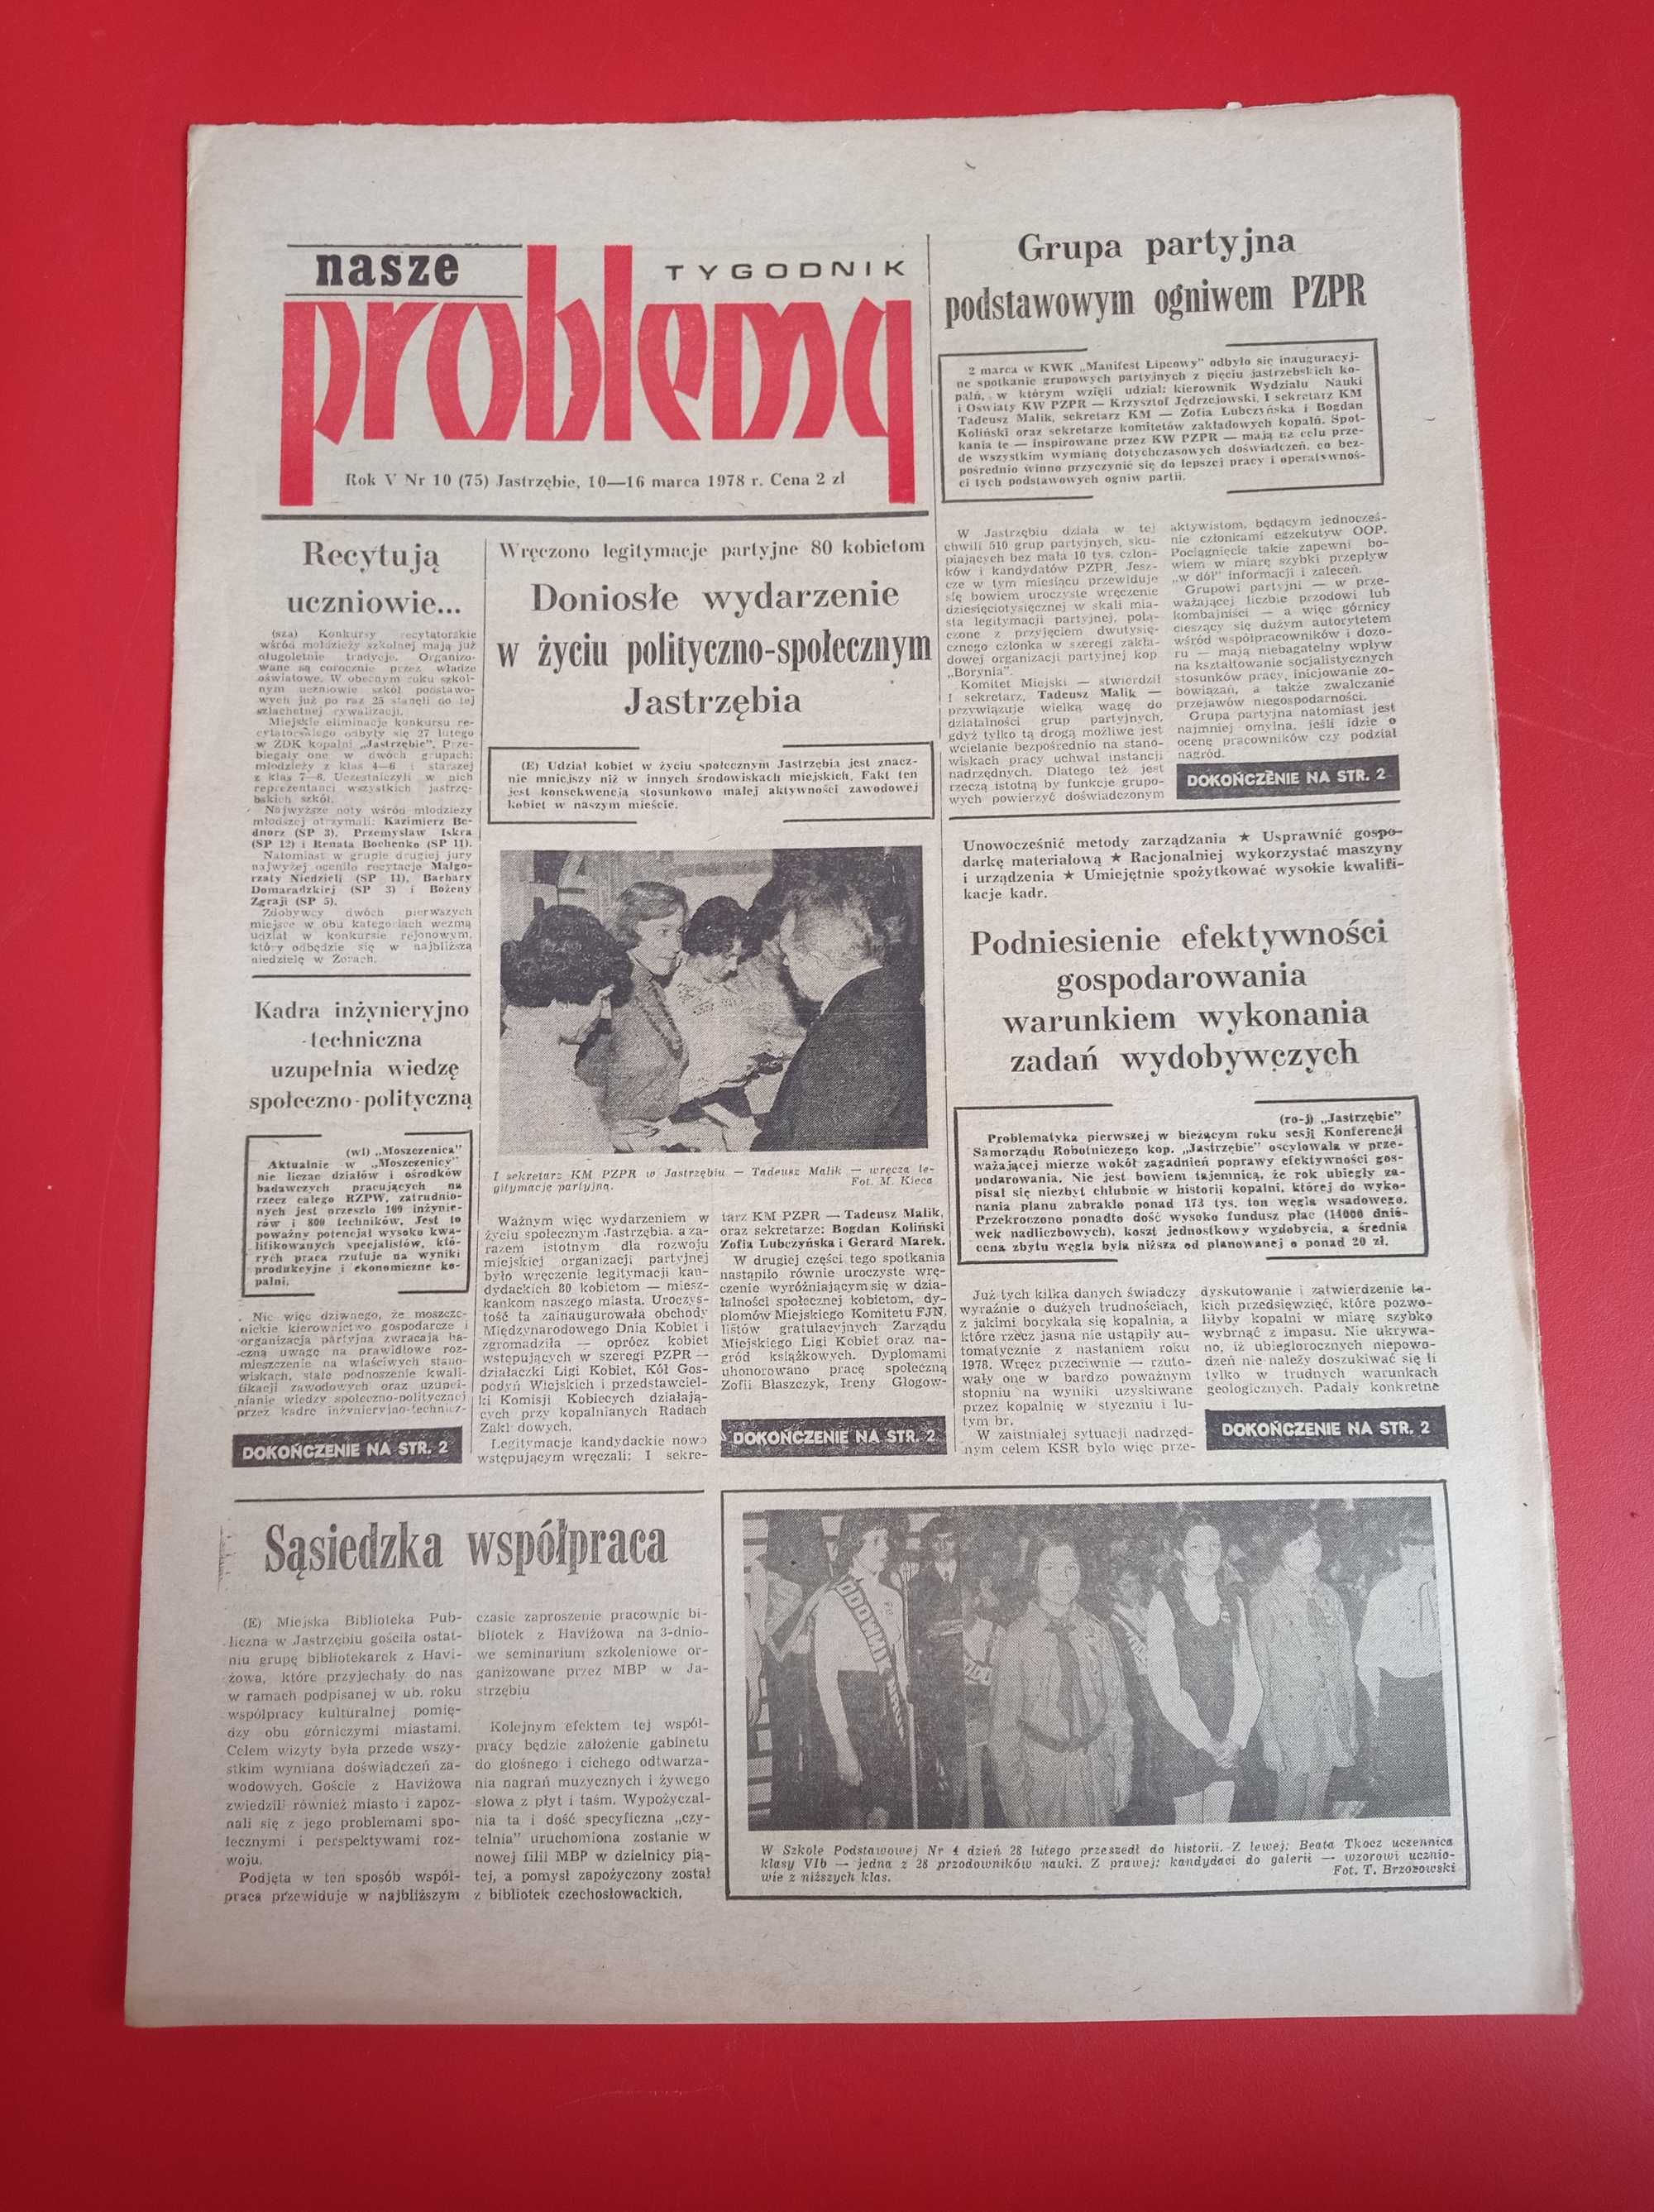 Nasze problemy, Jastrzębie, nr 10, 10-16 marca 1978